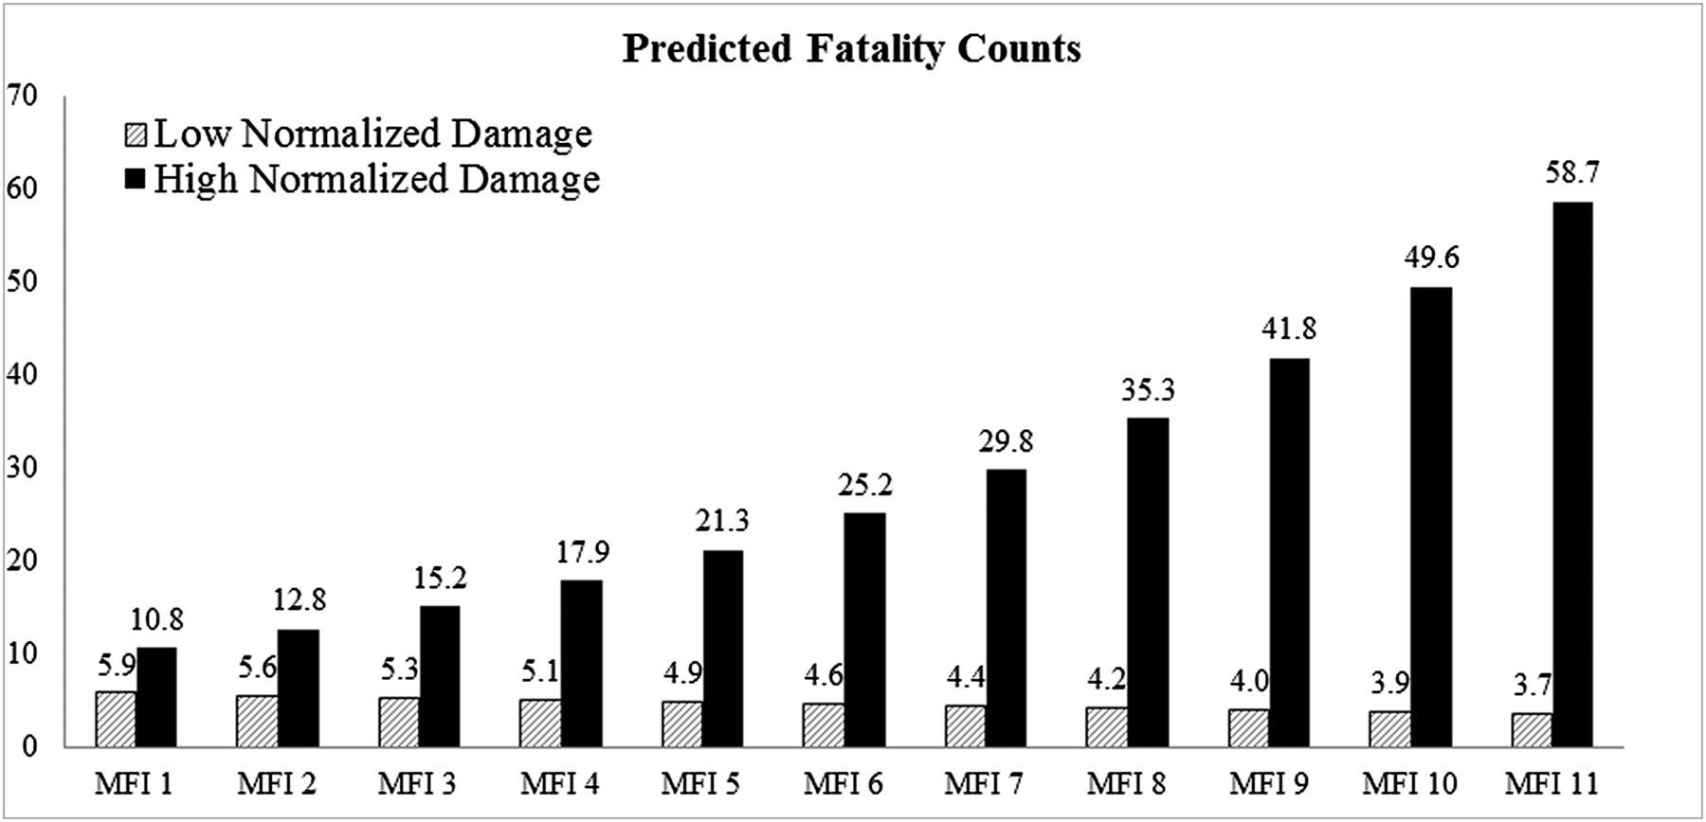 Recuento de muertes previstas. El MFI indica el índice de masculinidad-feminidad, y los huracanes con un MFI bajo (frente a un MFI alto) tienen nombres masculinos (frente a nombres femeninos).